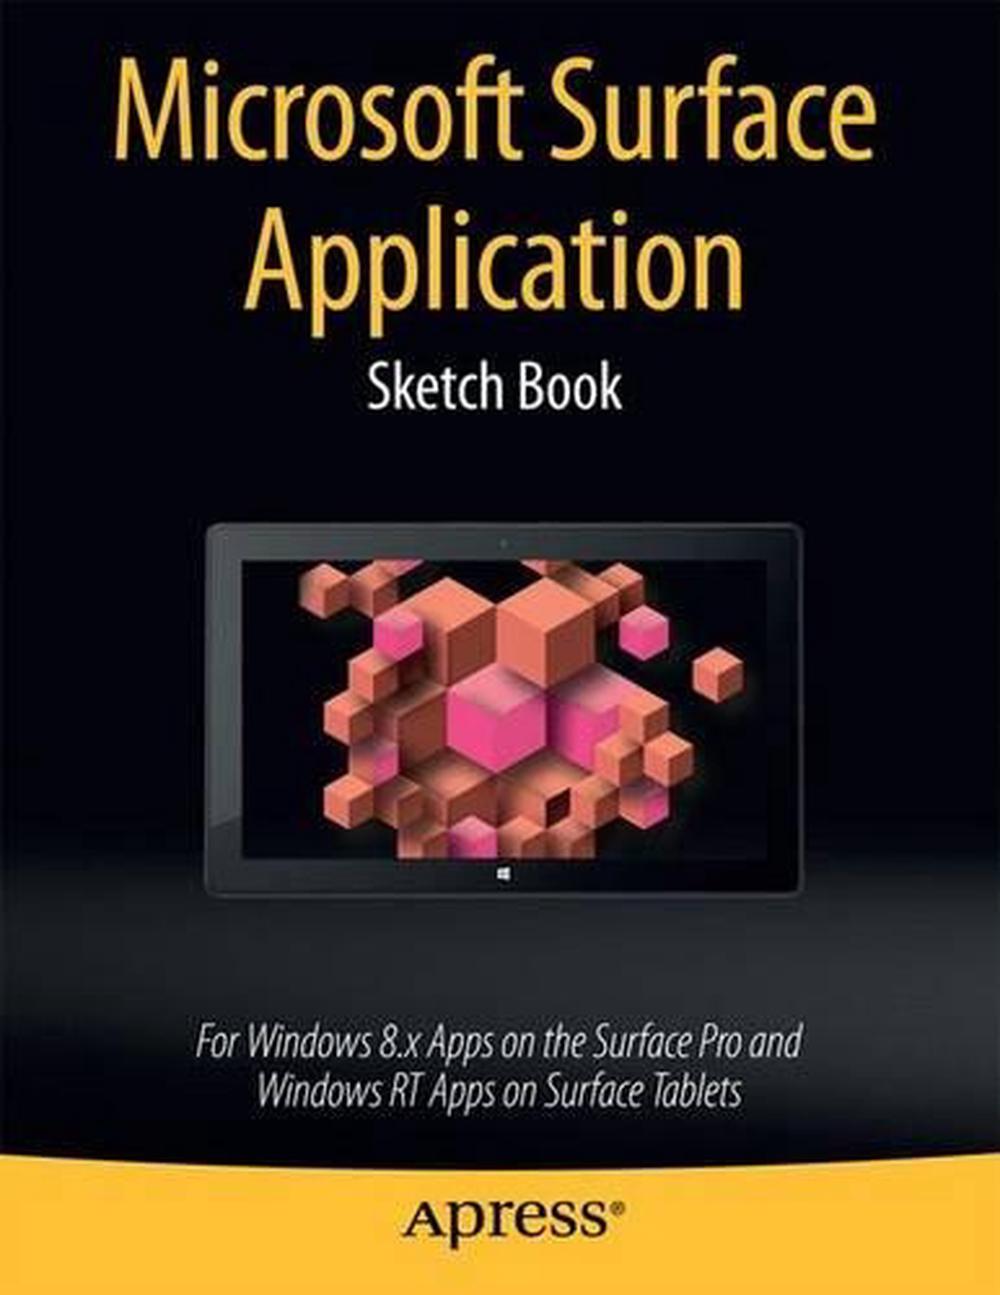 sketchbook for surface pro